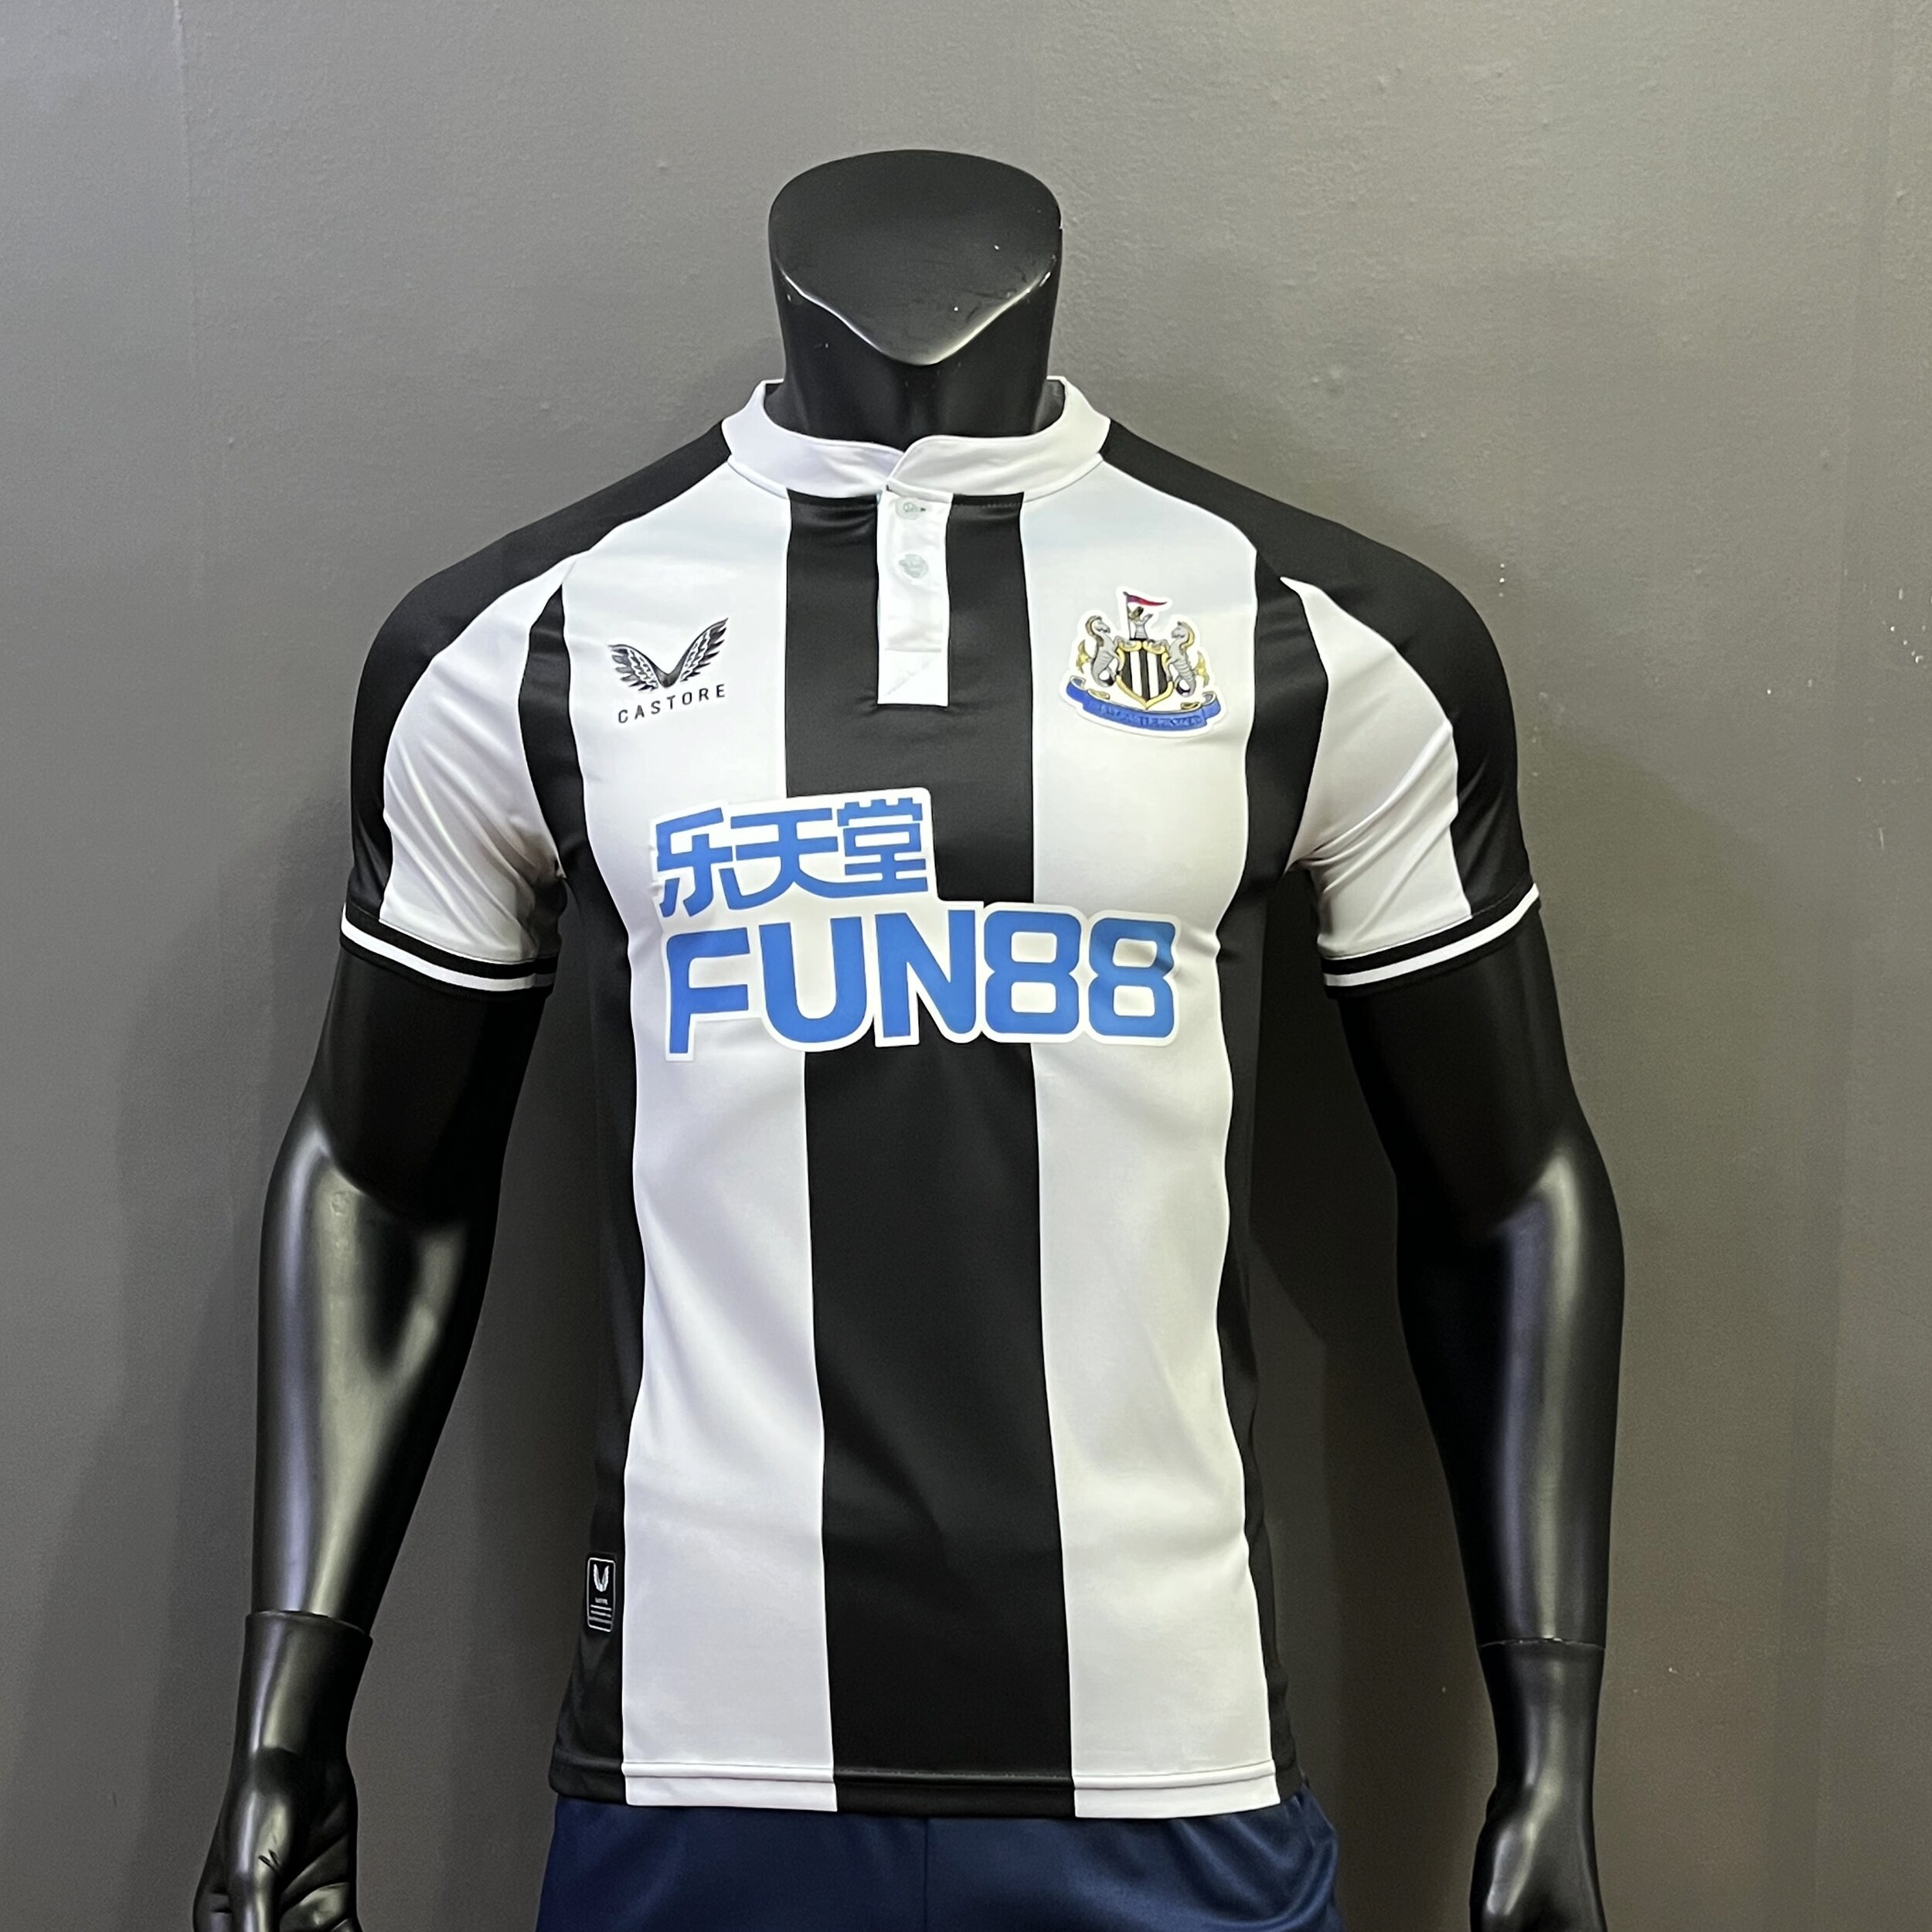 มุมมองเพิ่มเติมเกี่ยวกับ เสื้อฟุตบอล Player ทีม Newcastle  เสื้อบอล เนื้อผ้าโพลีเอสเตอร์ กล้ารับประกันสินค้าทุกตัว (P164)